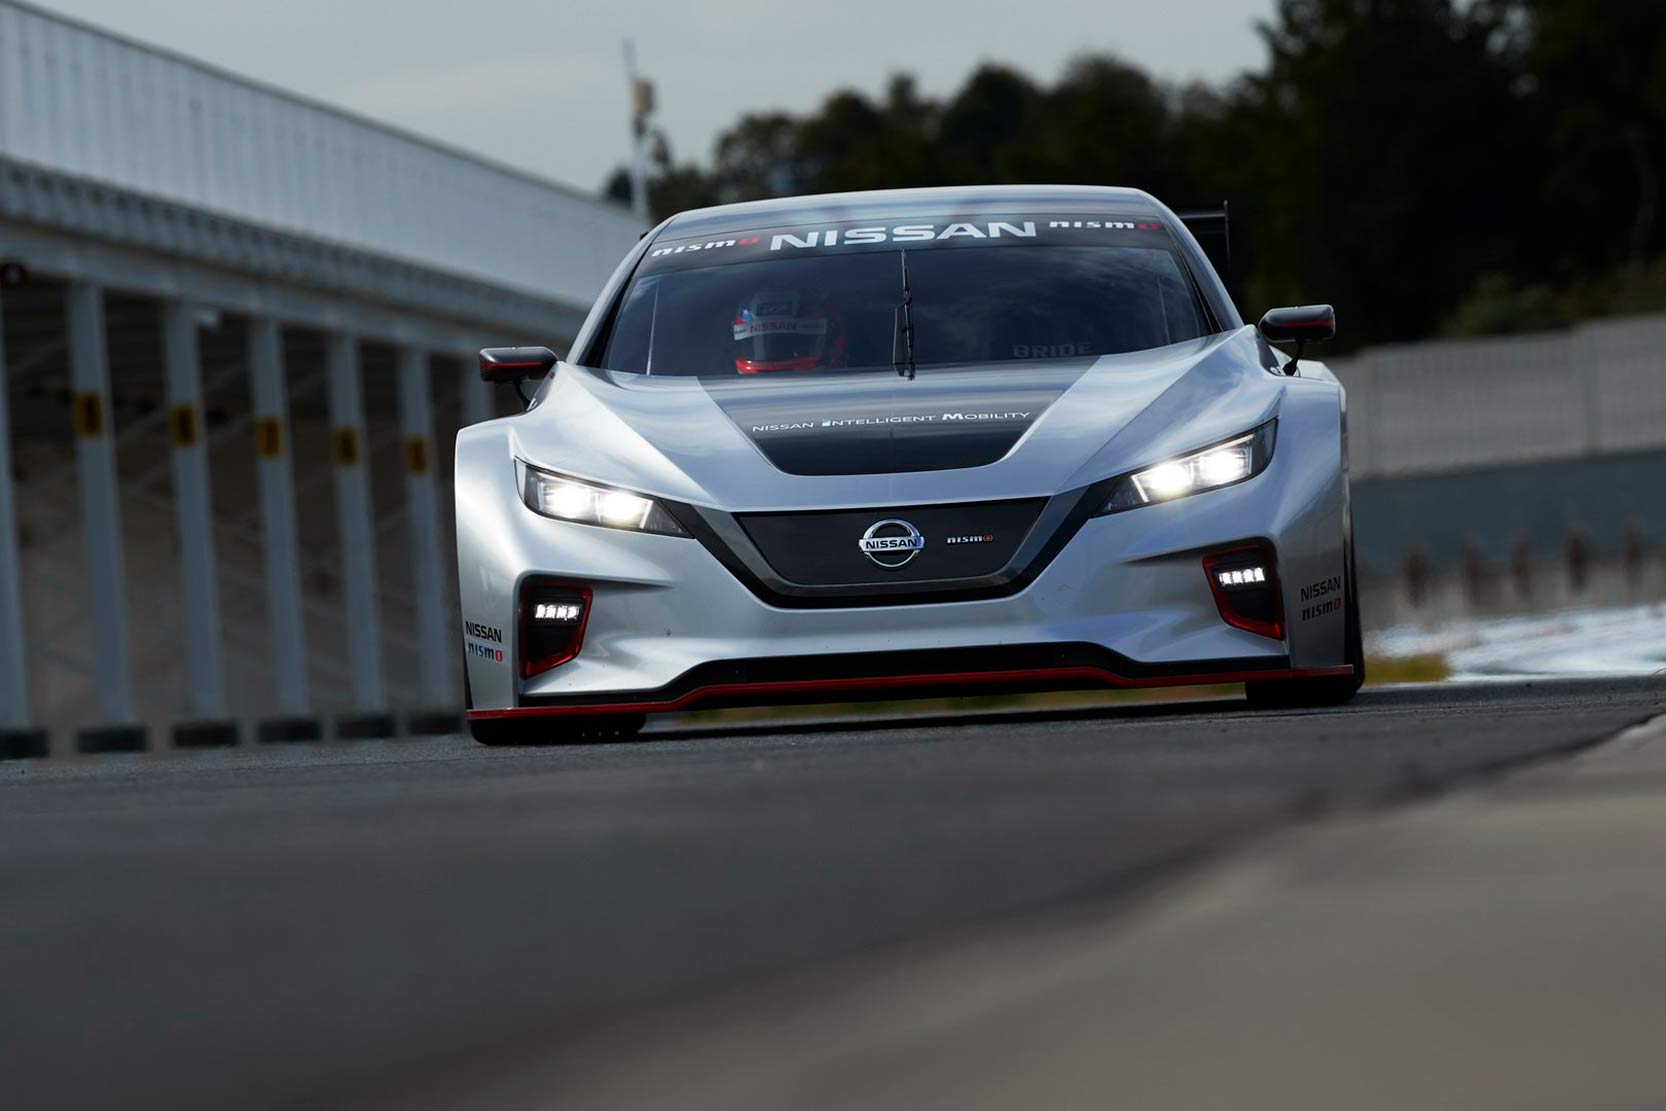 Image principale de l'actu: Nissan Leaf Nismo Racecar : la course a l'électrique